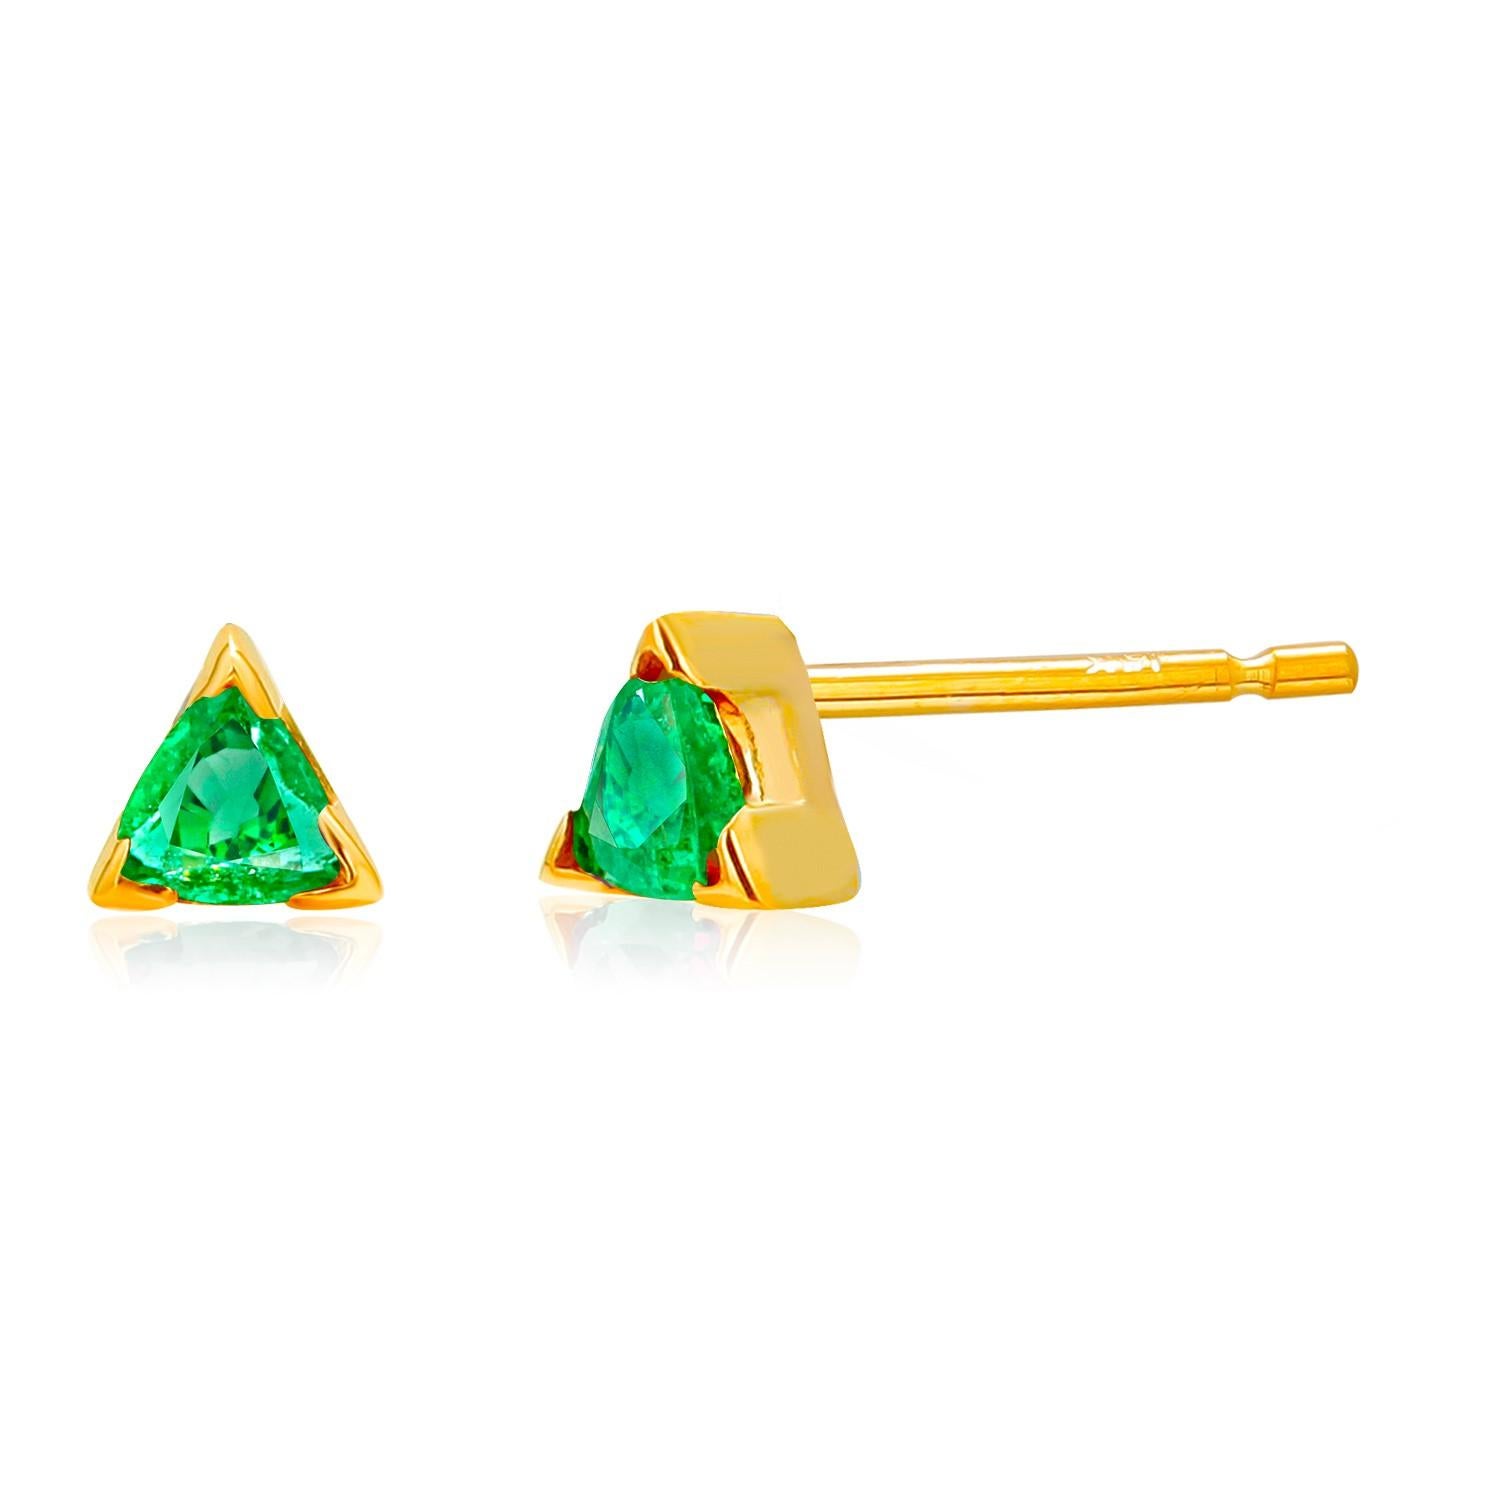 Wir stellen Ihnen unsere exquisiten Trillion Emerald Stud Earrings vor, eine atemberaubende Ergänzung Ihrer Schmucksammlung. Diese mit Präzision und Sorgfalt gefertigten Ohrringe bieten ein perfektes Gleichgewicht zwischen Eleganz und Raffinesse und